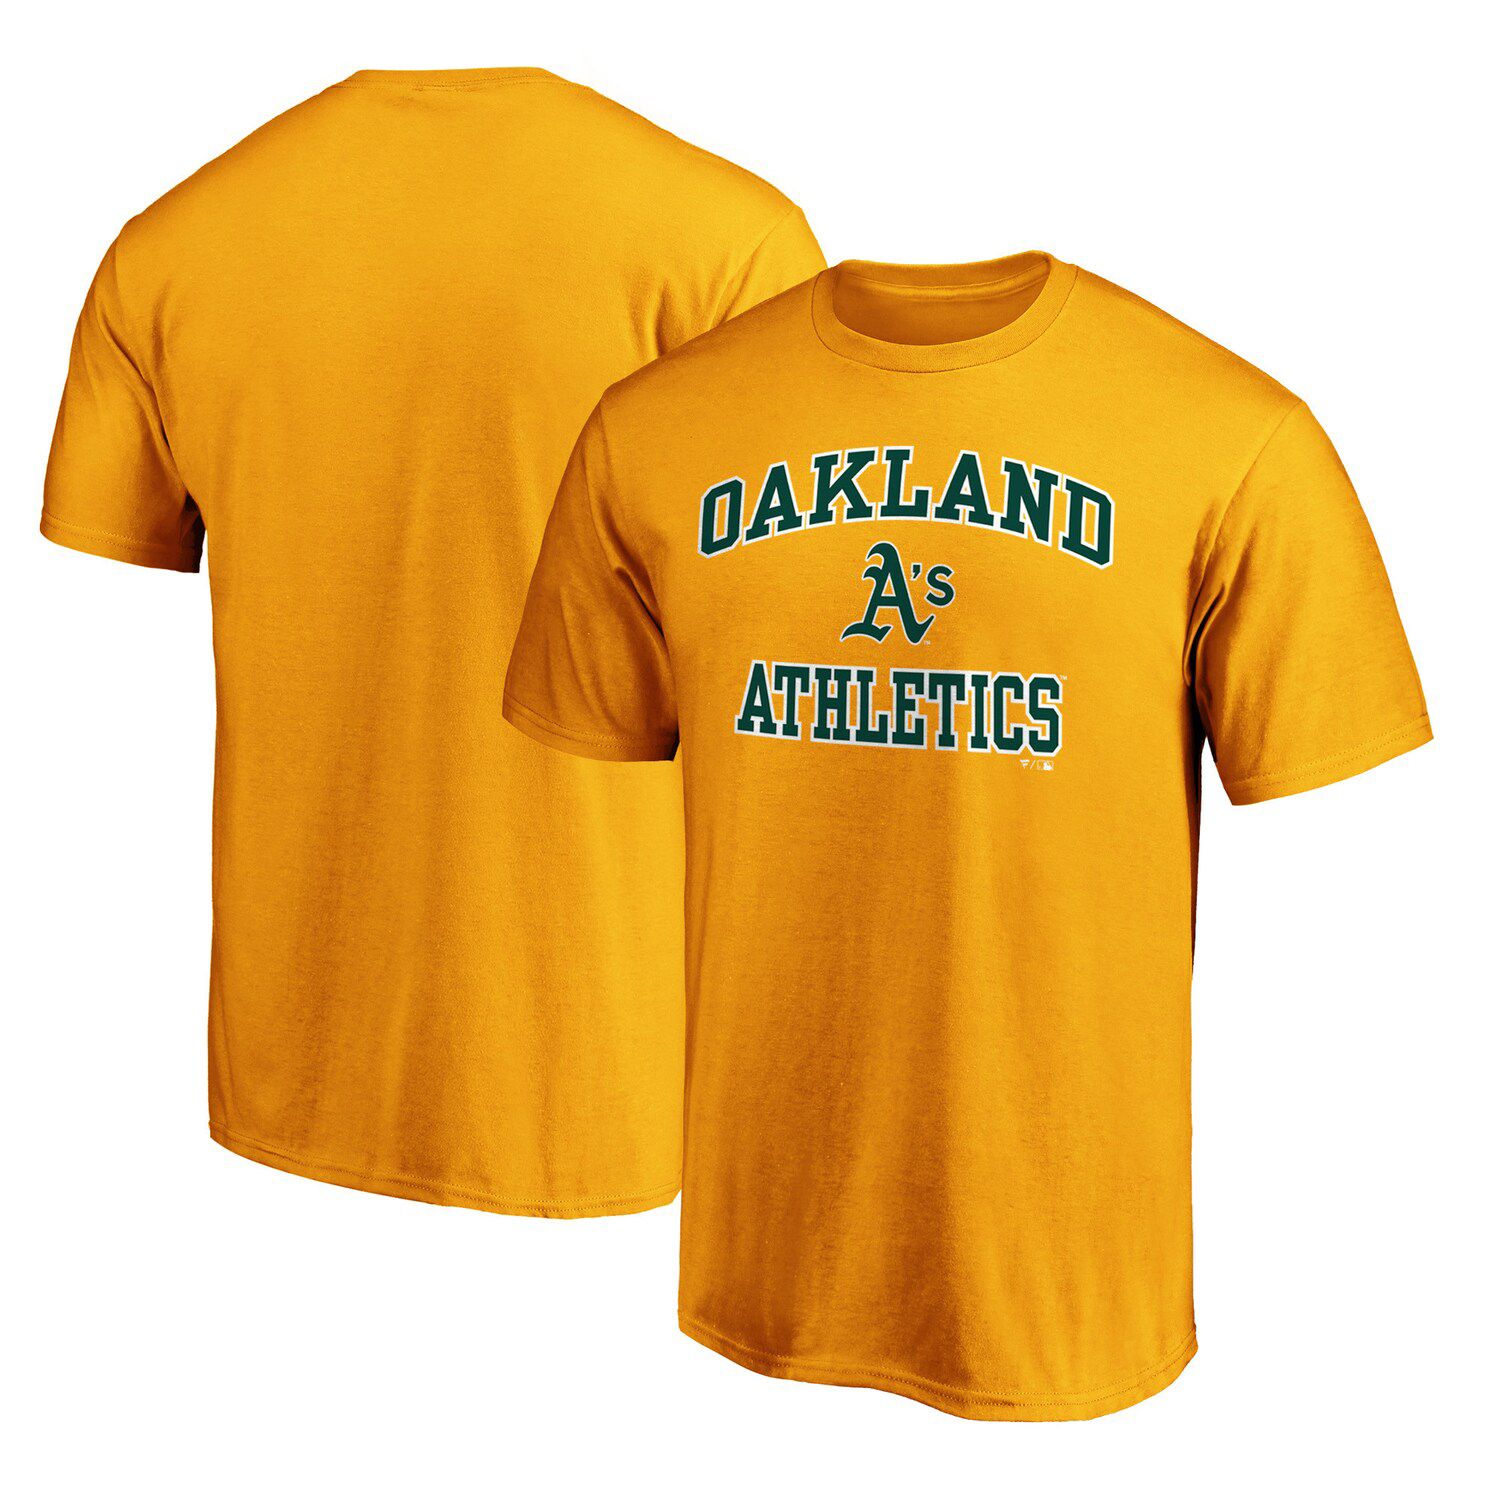 oakland a's t shirt